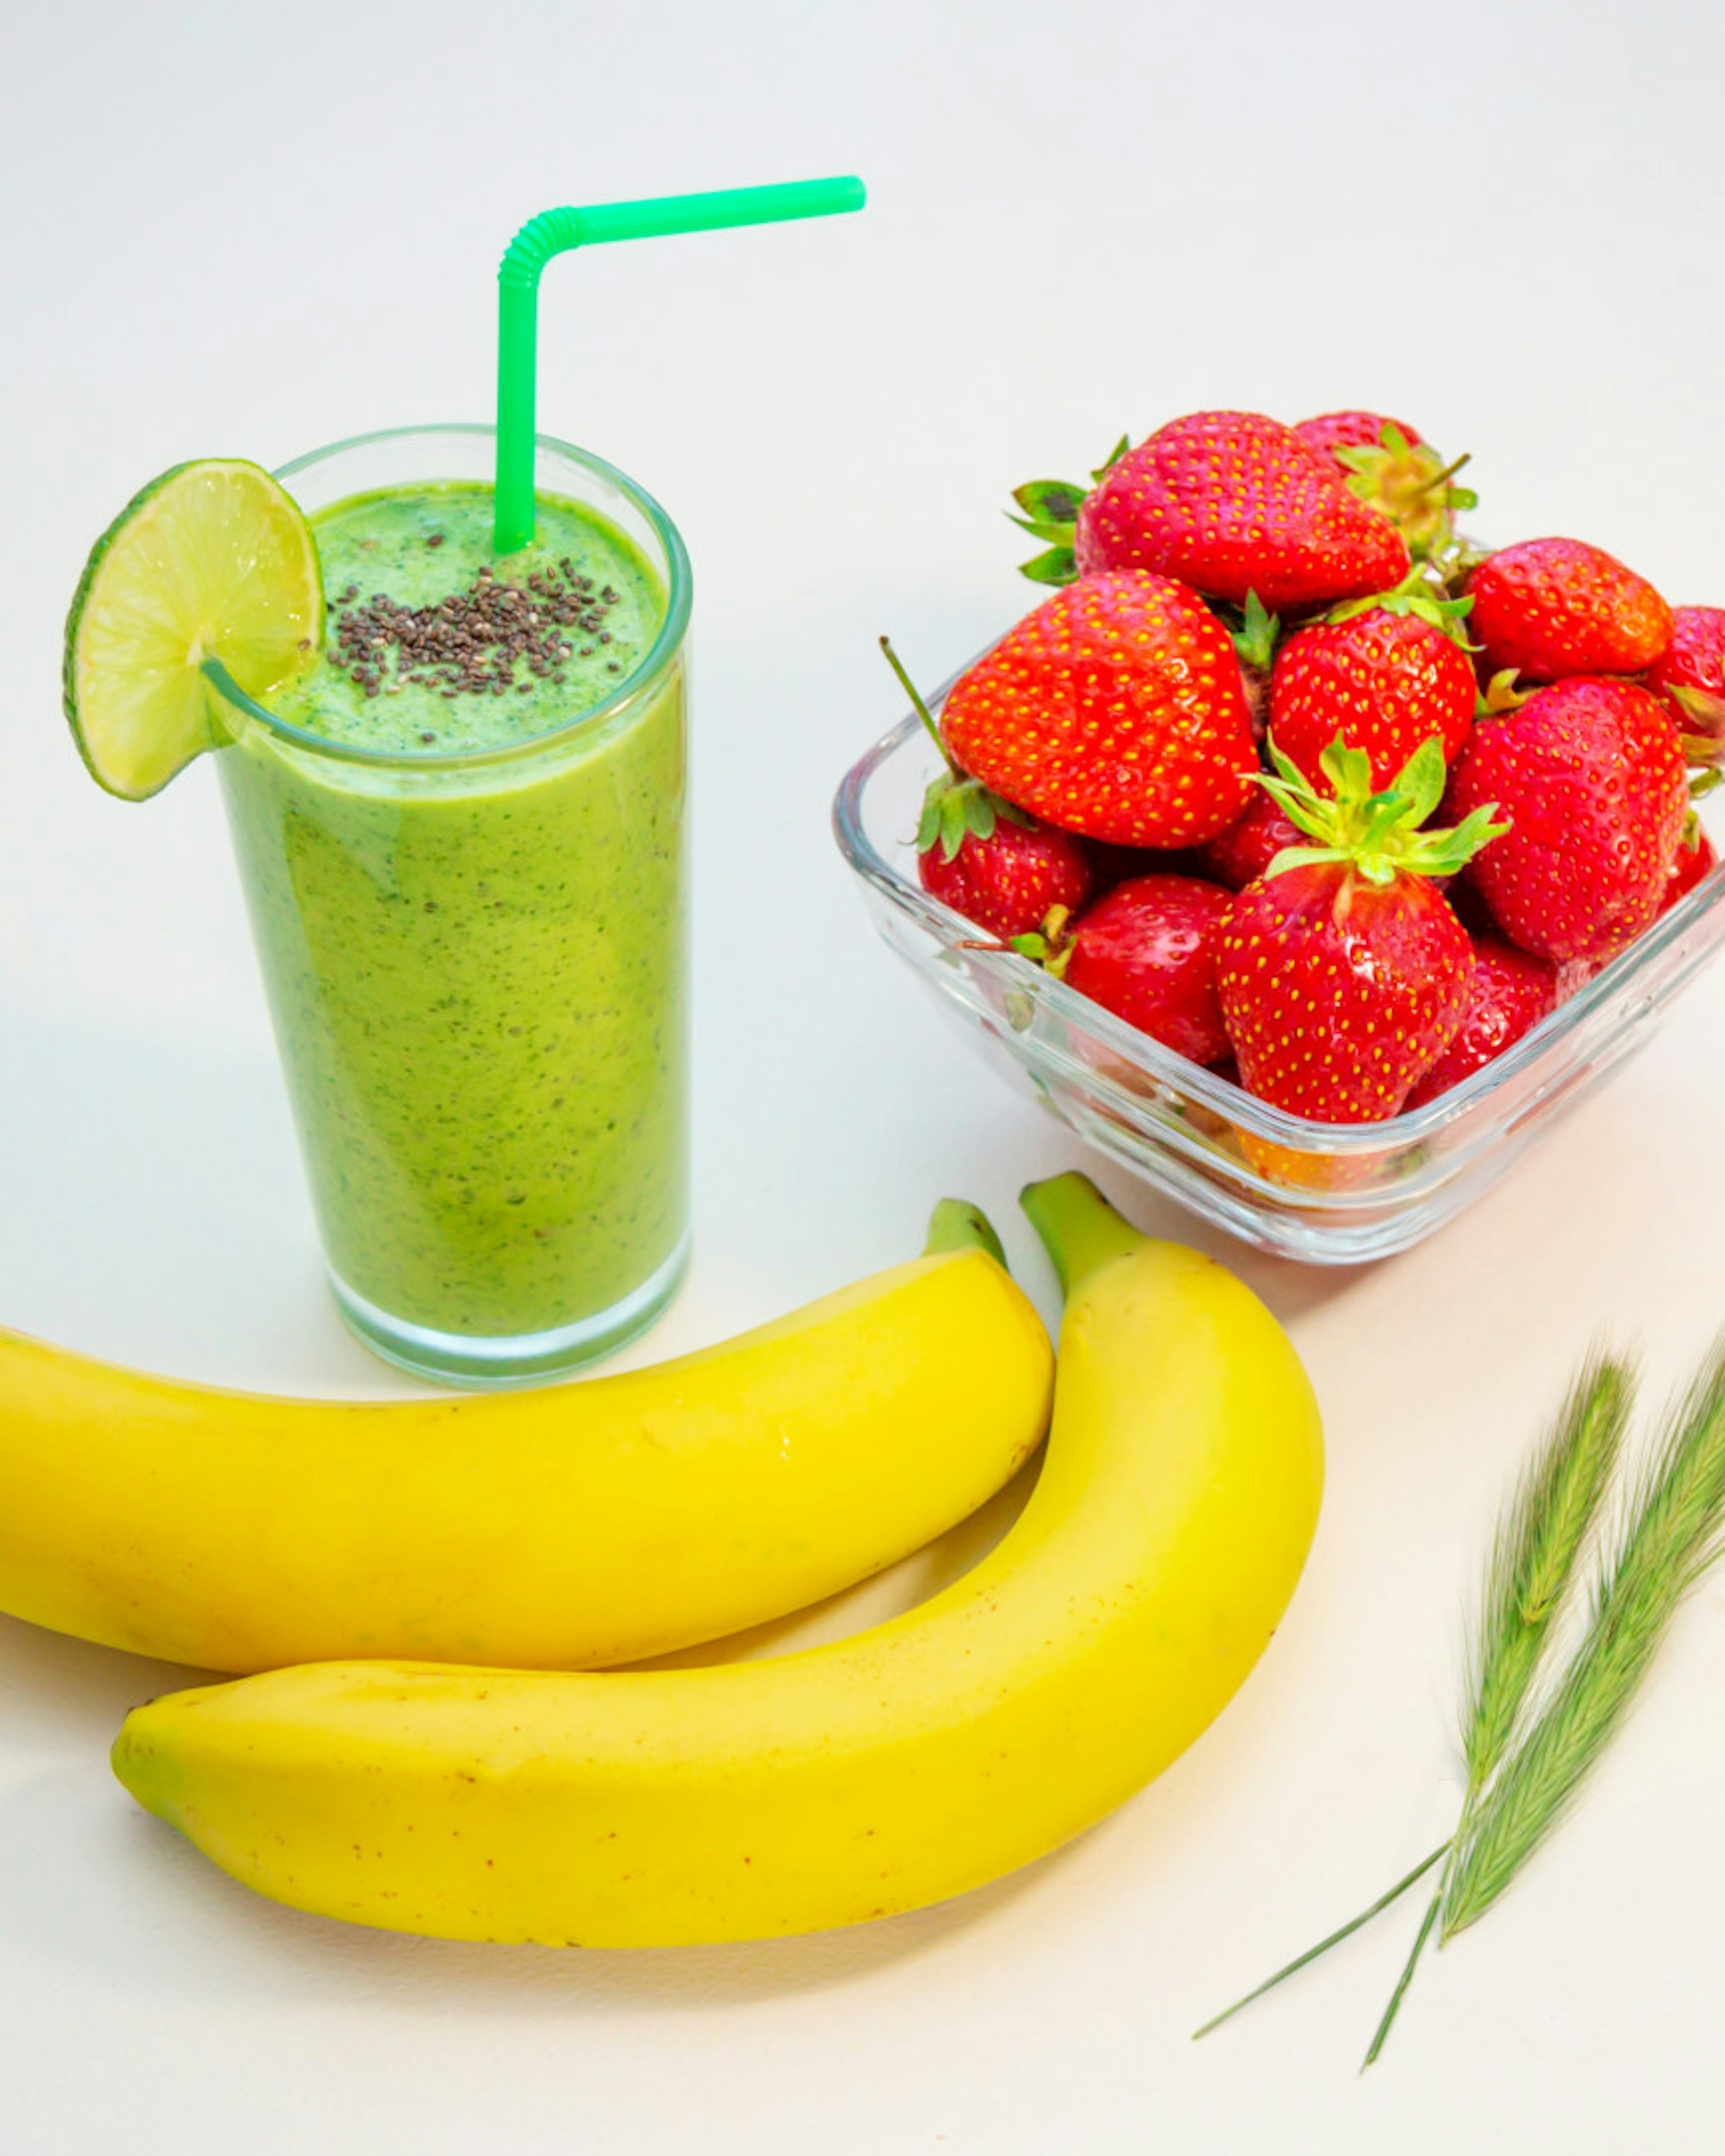 Grüner Smoothie im Glas Bananen und reife Erdbeeren auf dem Tisch. Gesundes Frühstück.